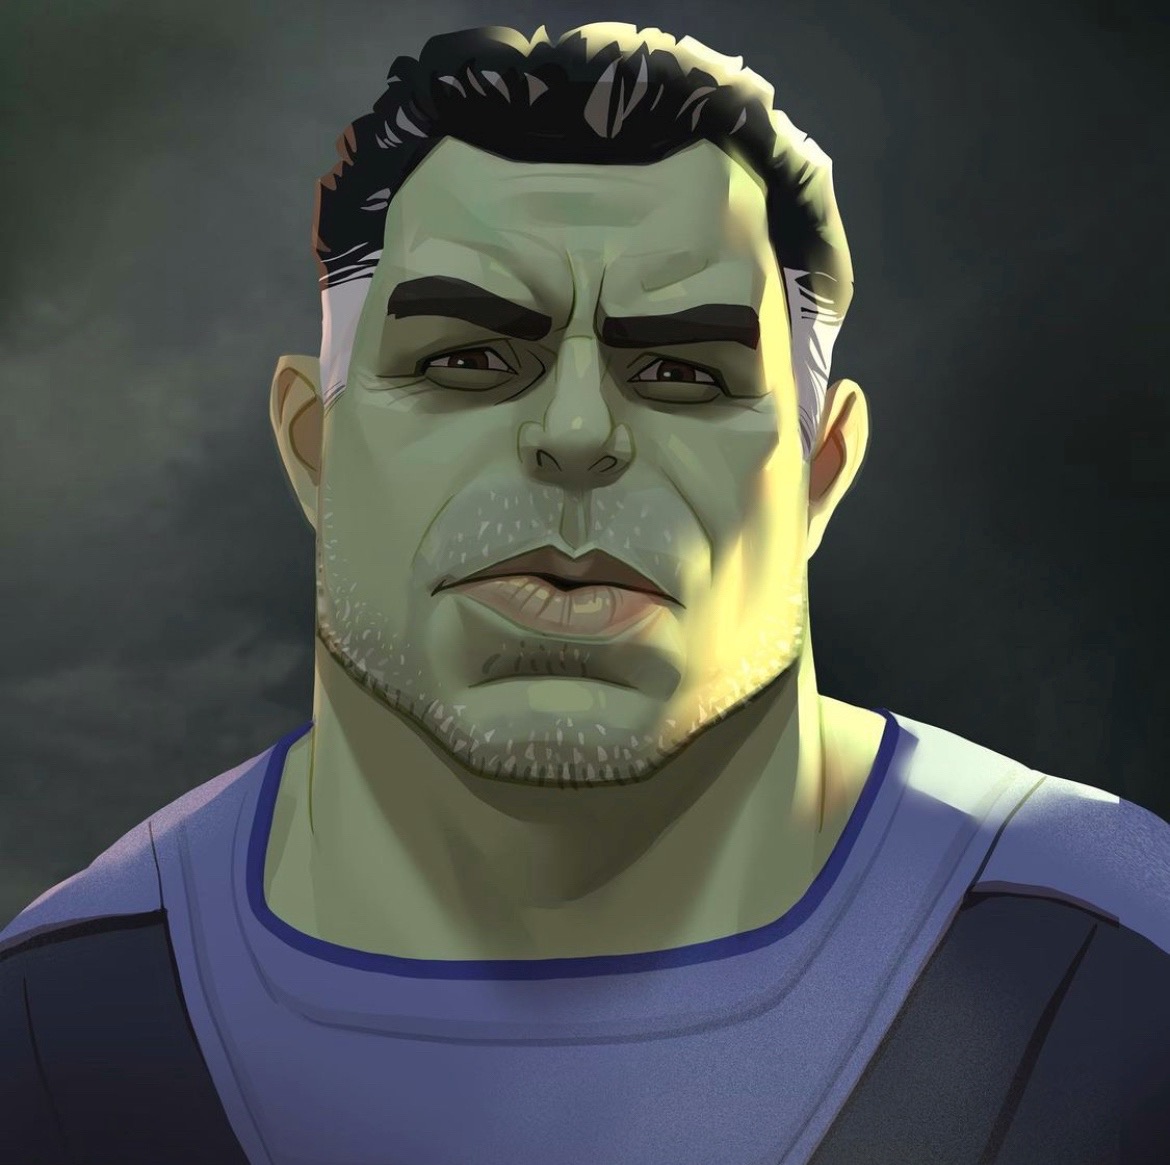 Bruce Banner | Hulk - Movies on Cartoon Metaverse | OpenSea